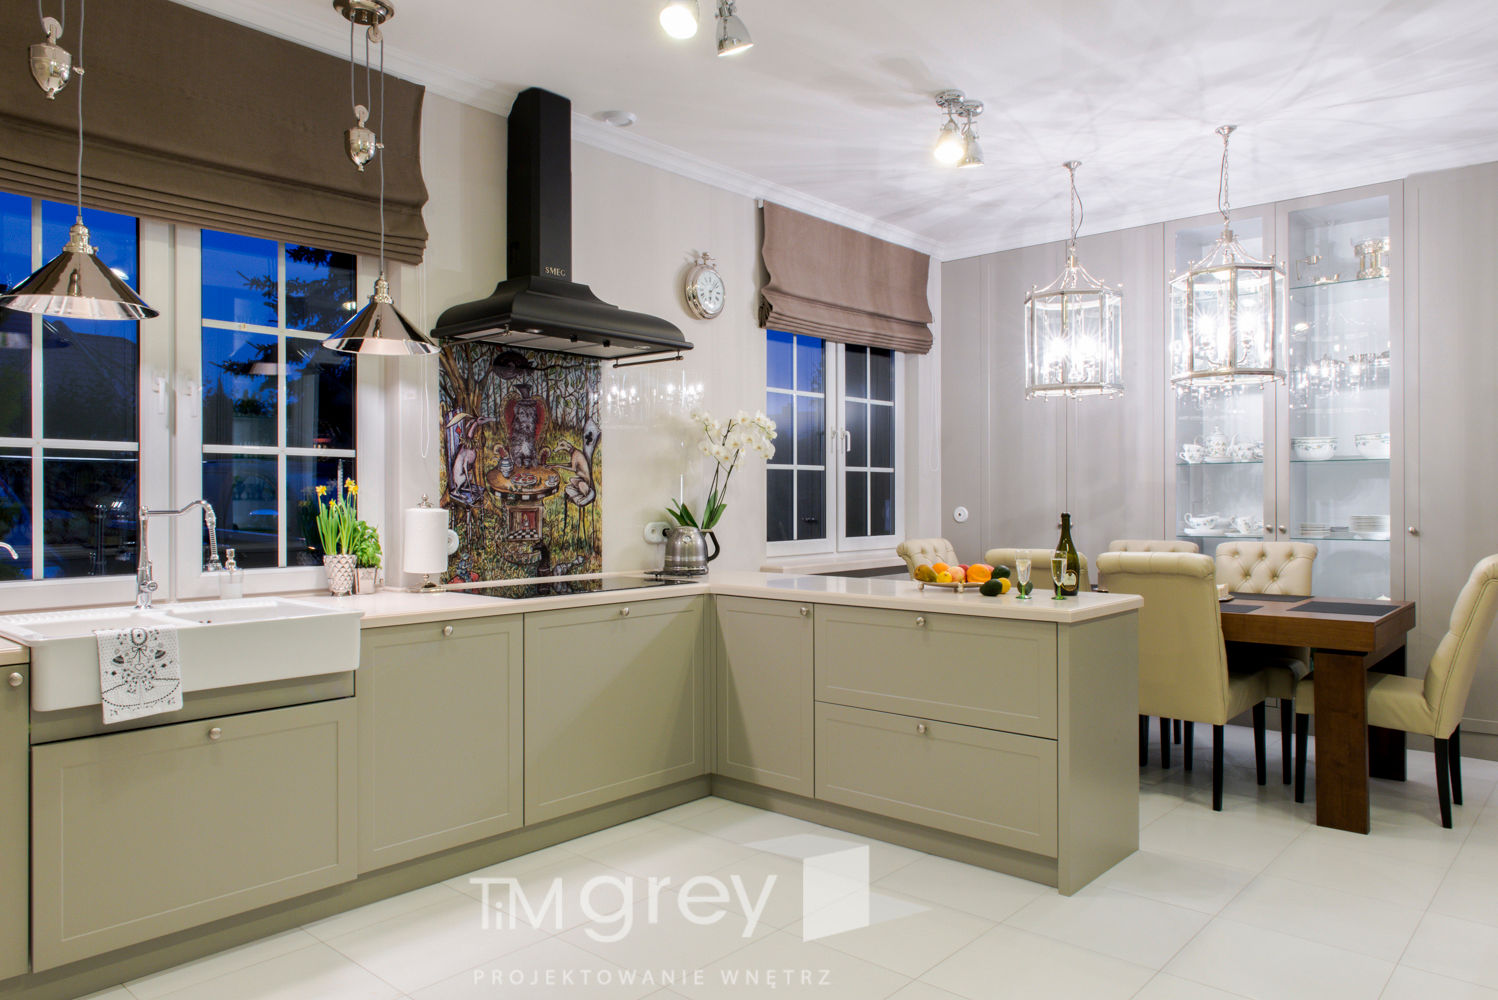 Classic Design - 230m2, TiM Grey Interior Design TiM Grey Interior Design Classic style kitchen